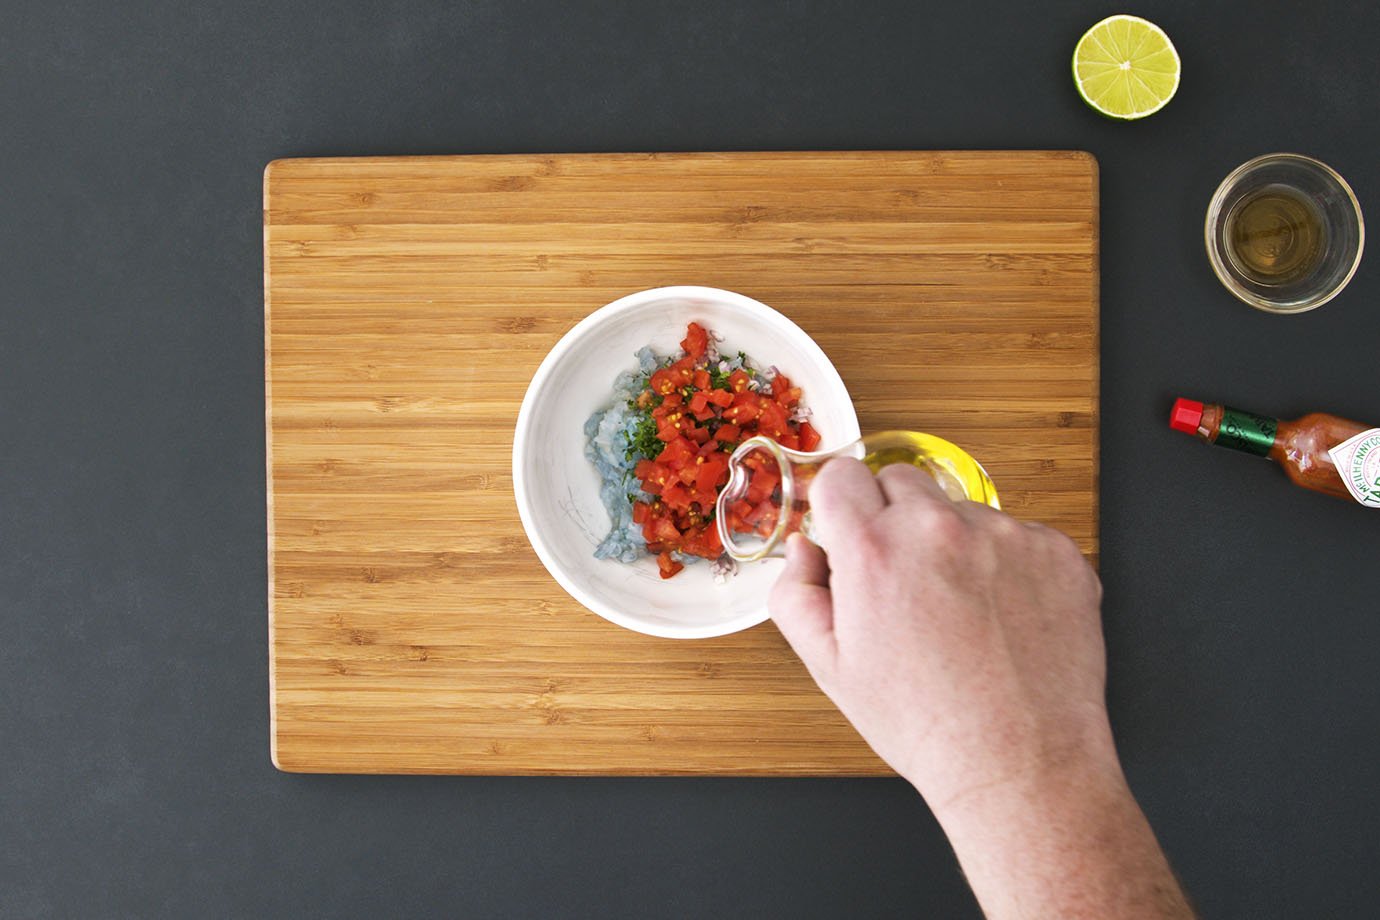 3. Schalotte, Kerbel und Tomaten sorgfältig untermischen. Olivenöl beifügen und mit Salz und Pfeffer würzen.